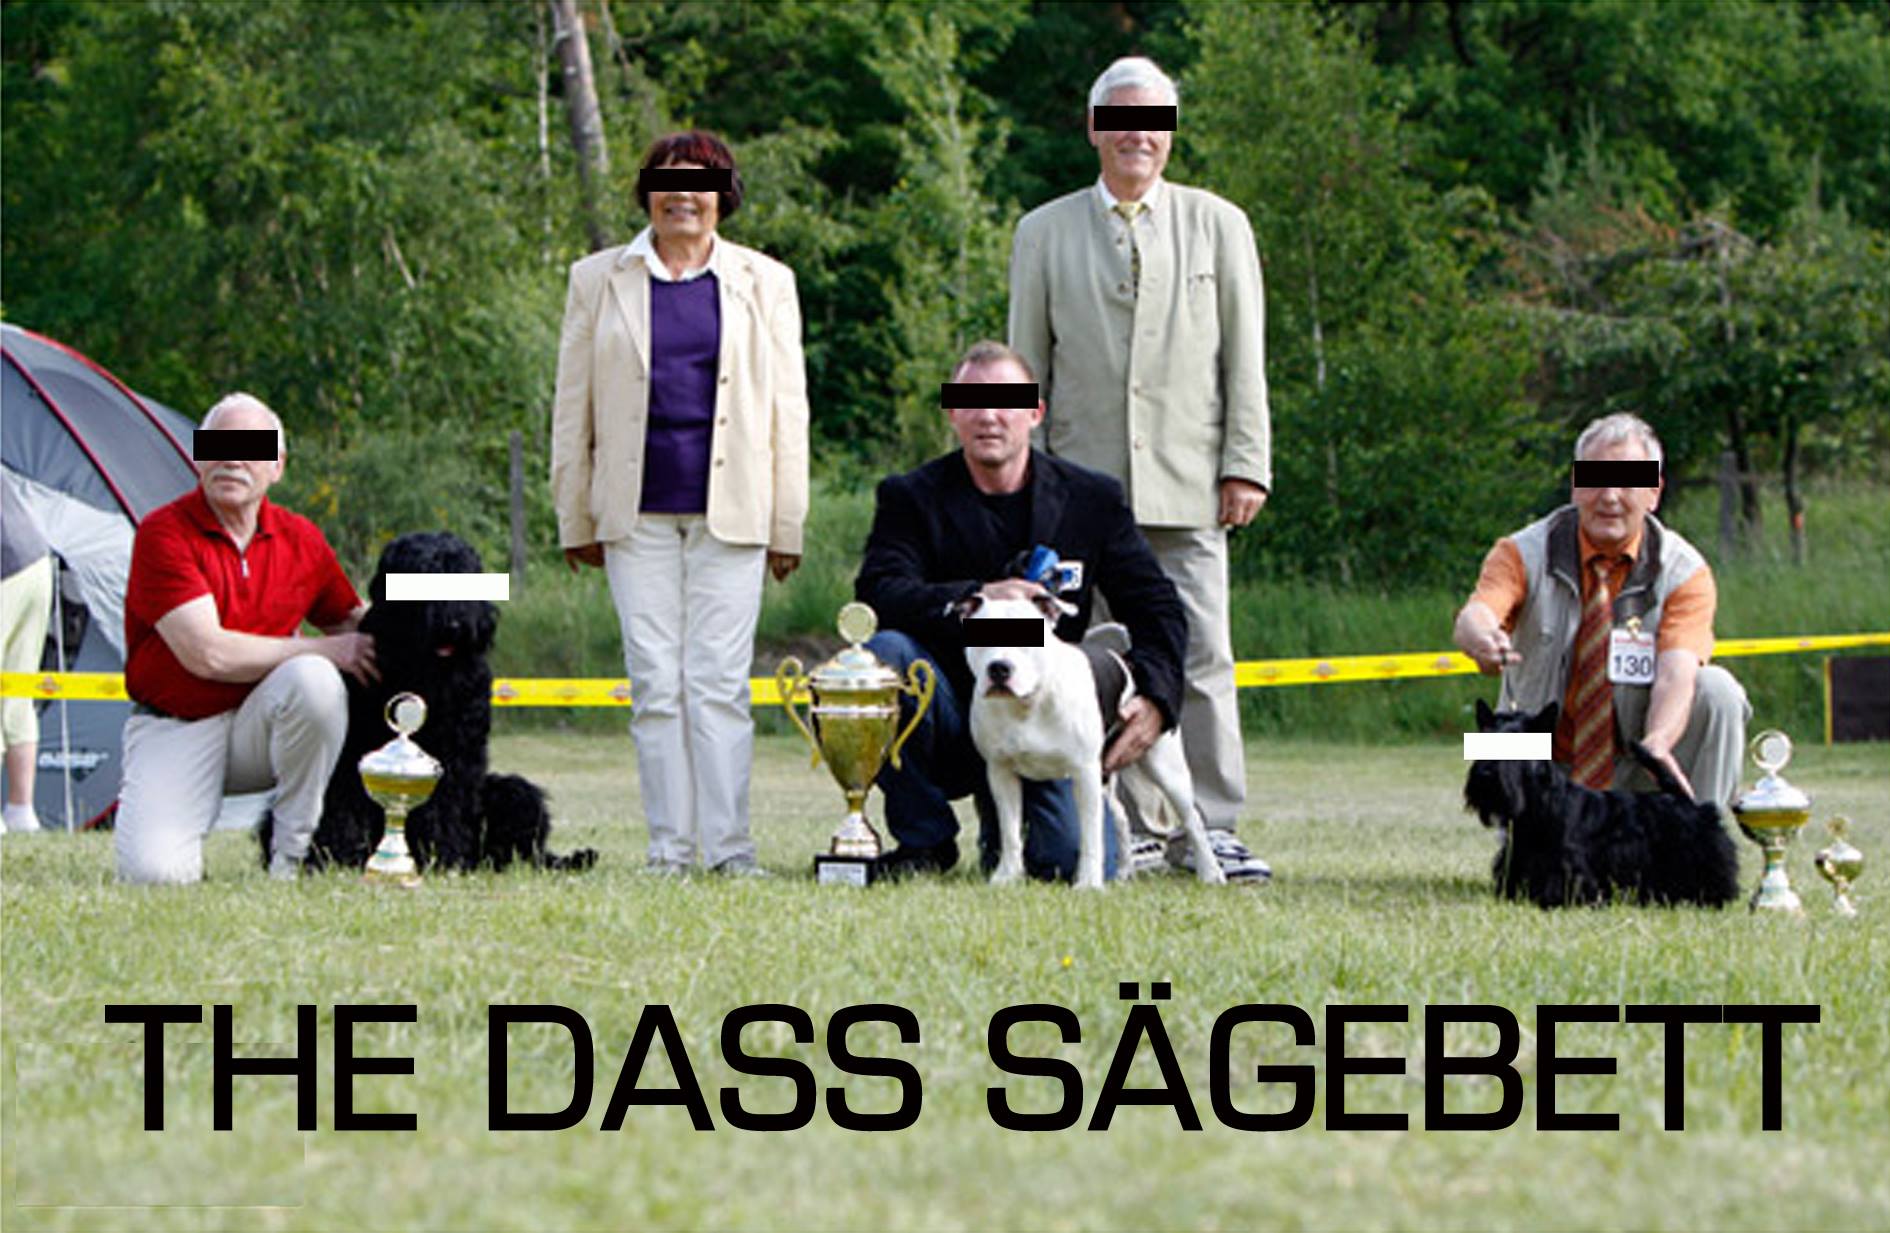 THE DASS SÄGEBETT